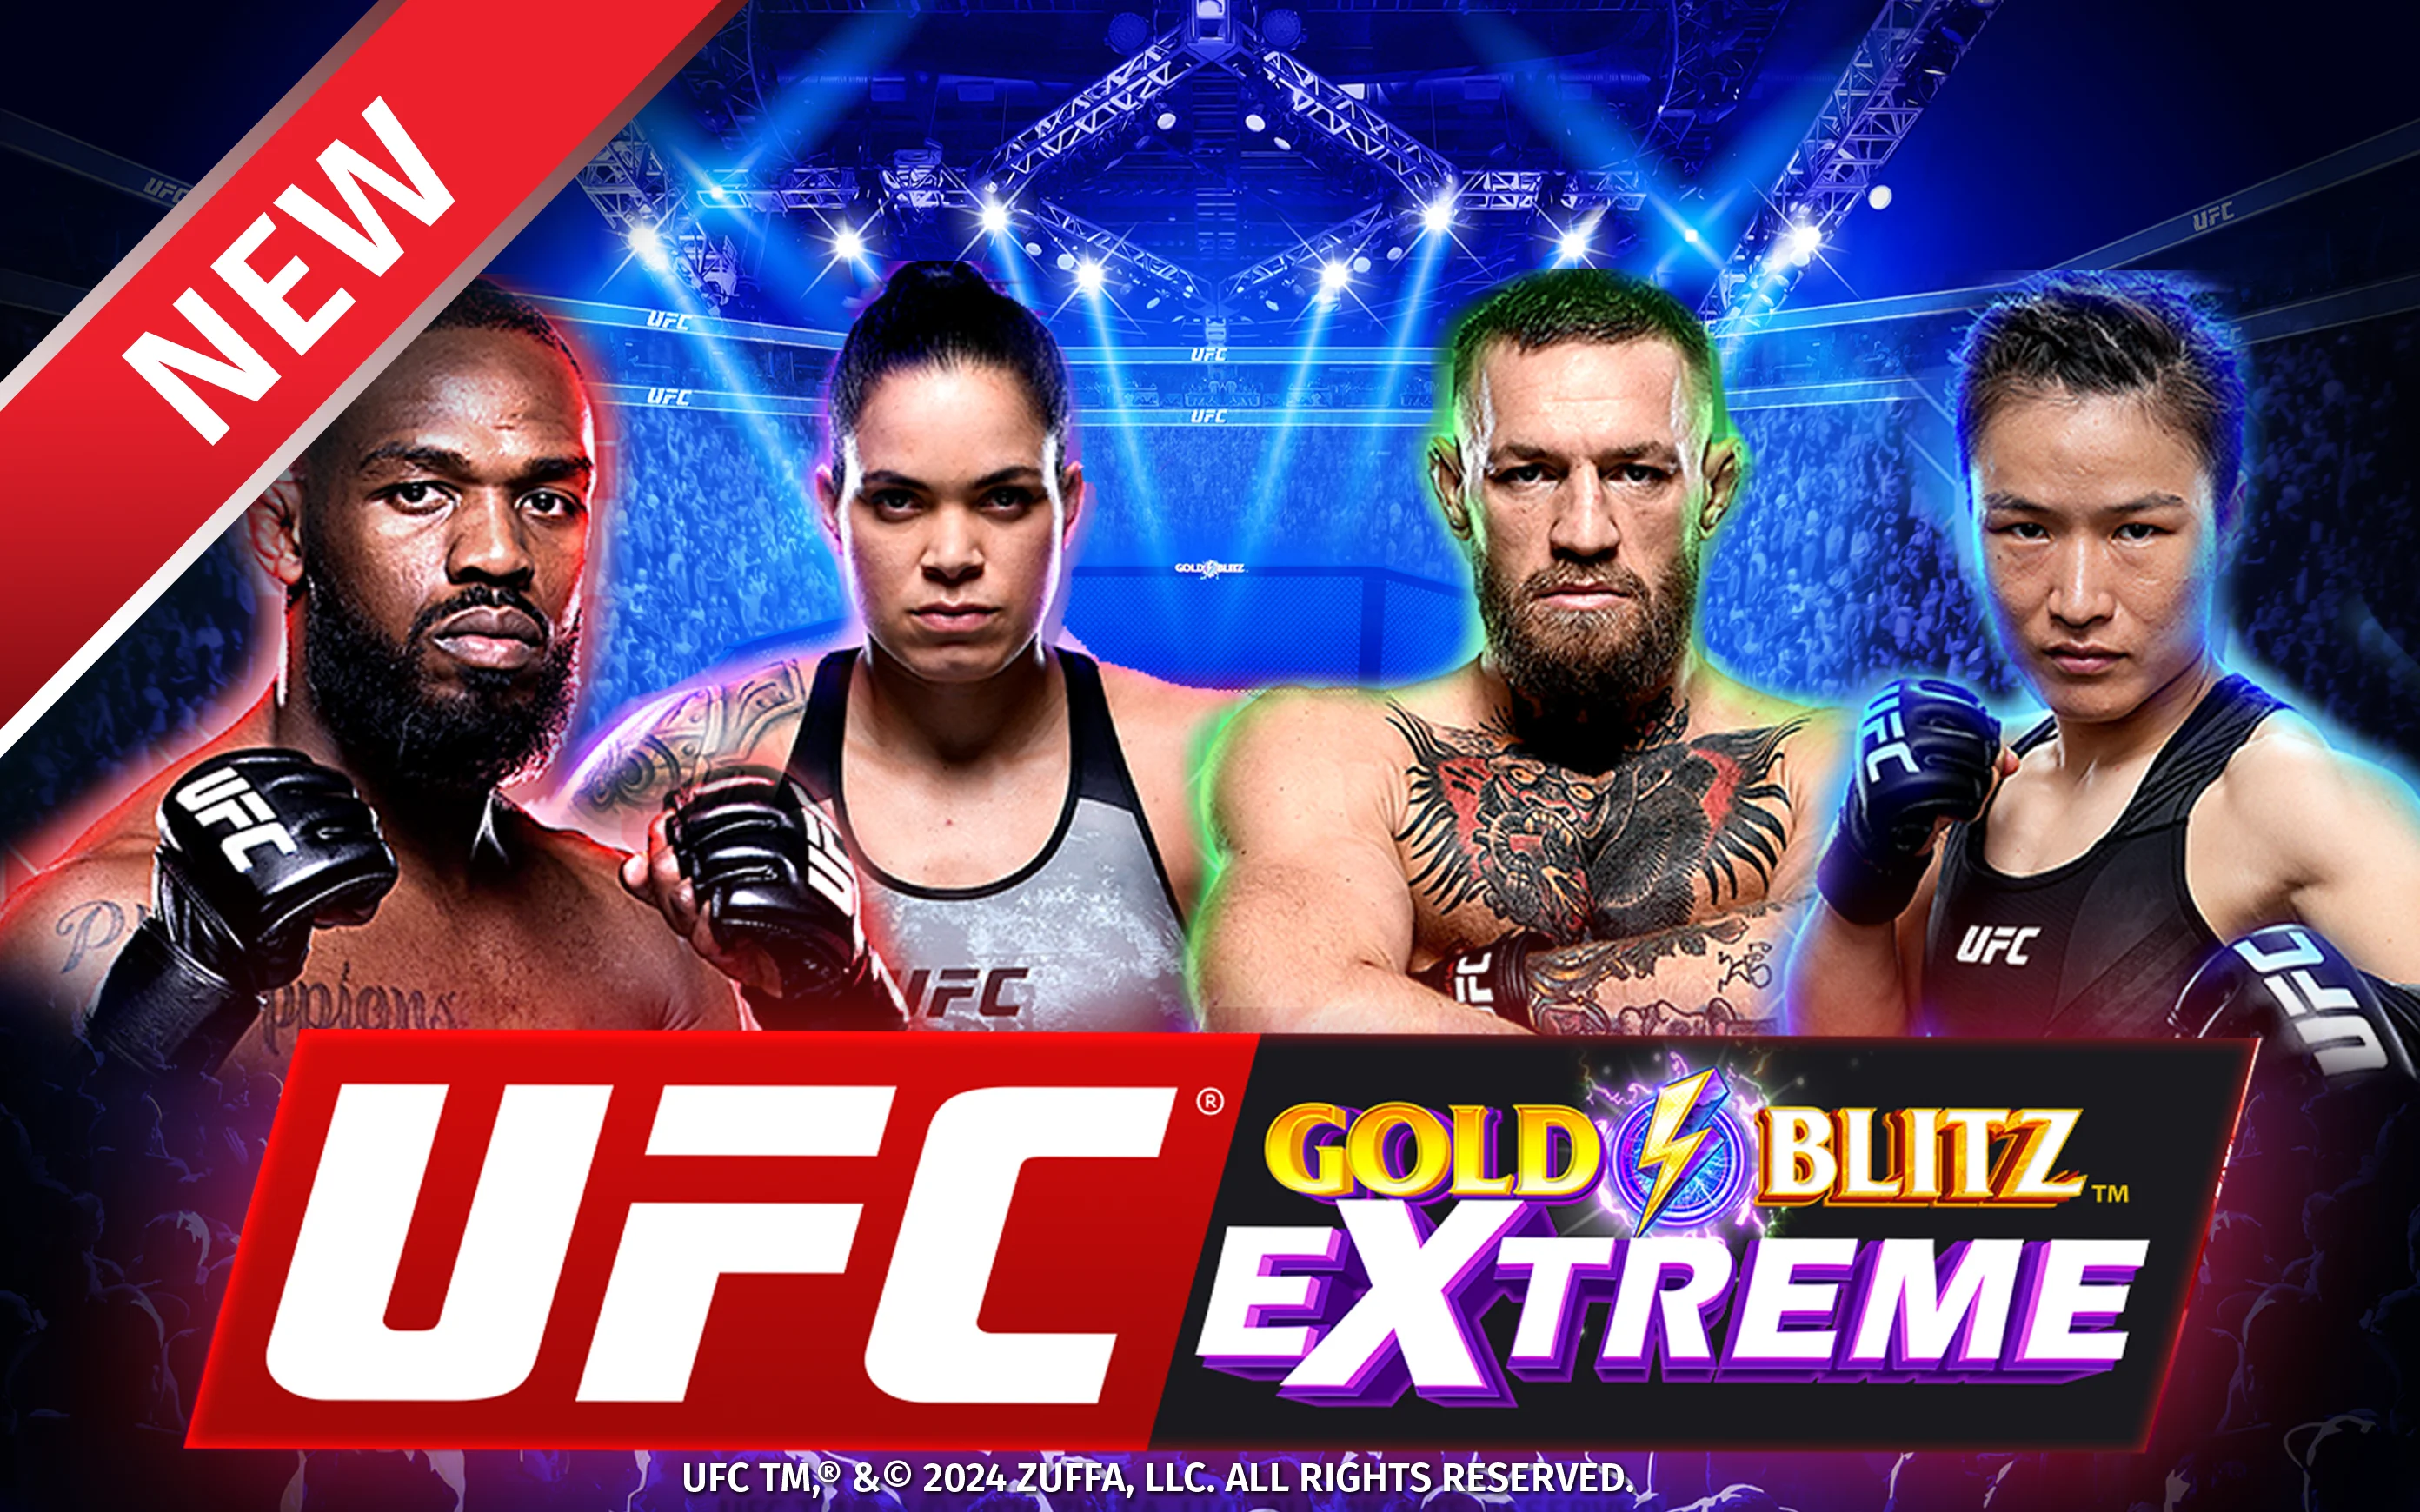 Jouer à UFC Gold Blitz Extreme™ sur le casino en ligne Starcasino.be